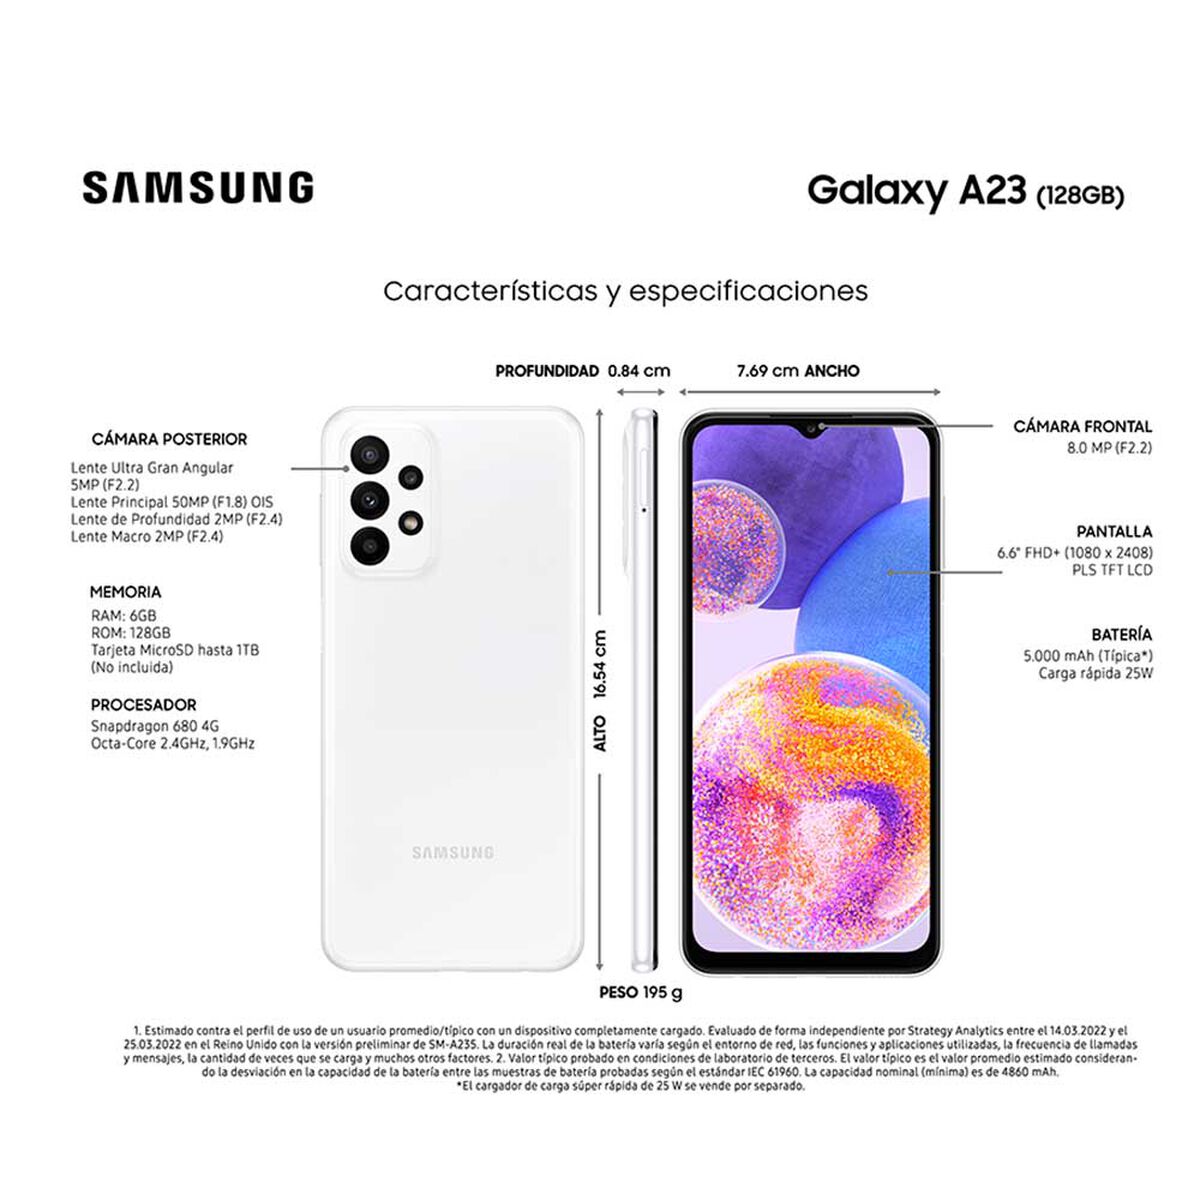 Nuevo Samsung Galaxy A23 5G: características, precio y ficha técnica